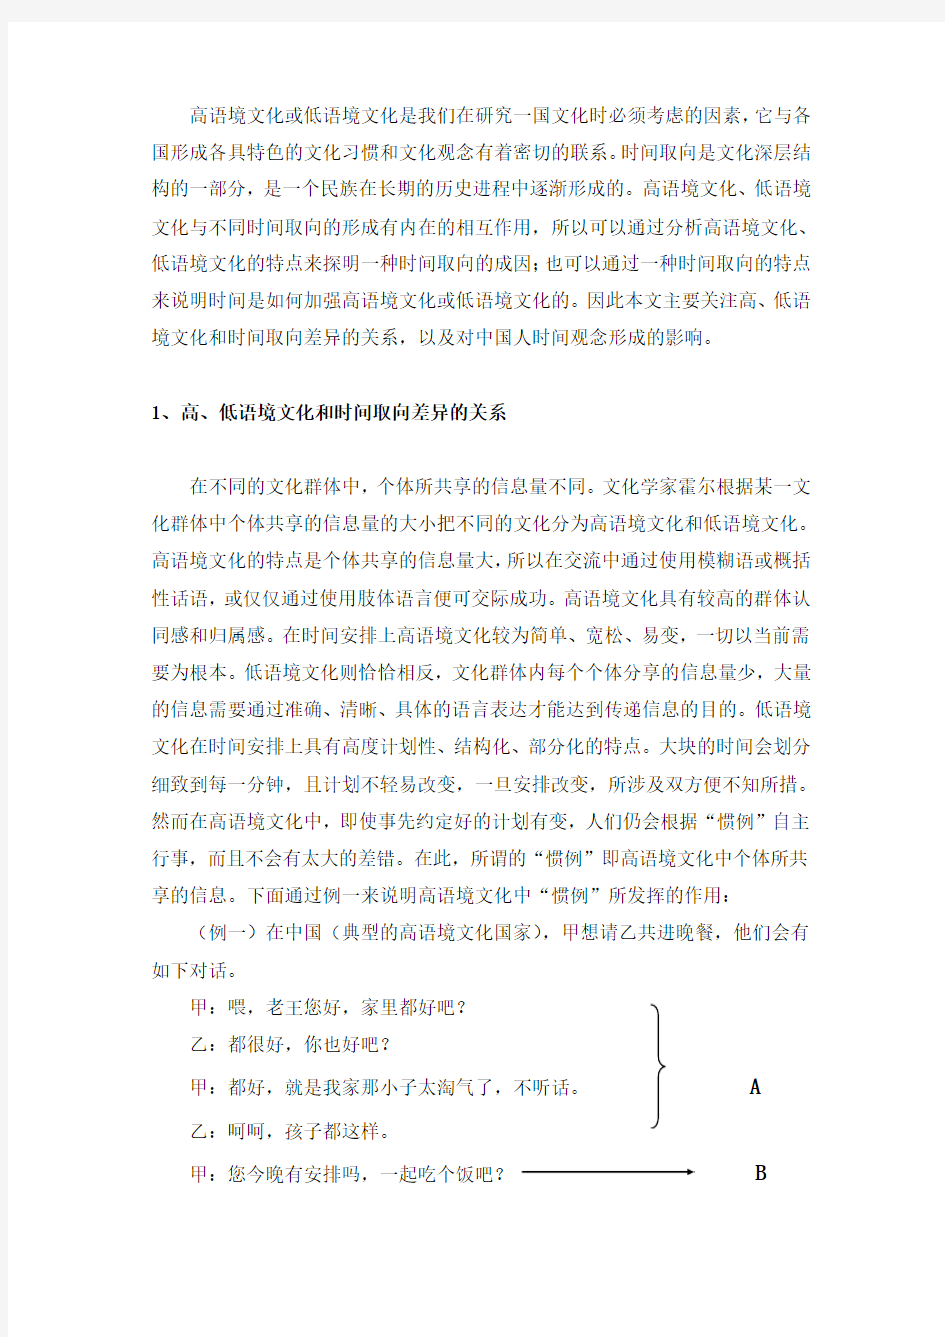 跨文化交际的论文(汉语) 转自《东方论坛》2010年增刊